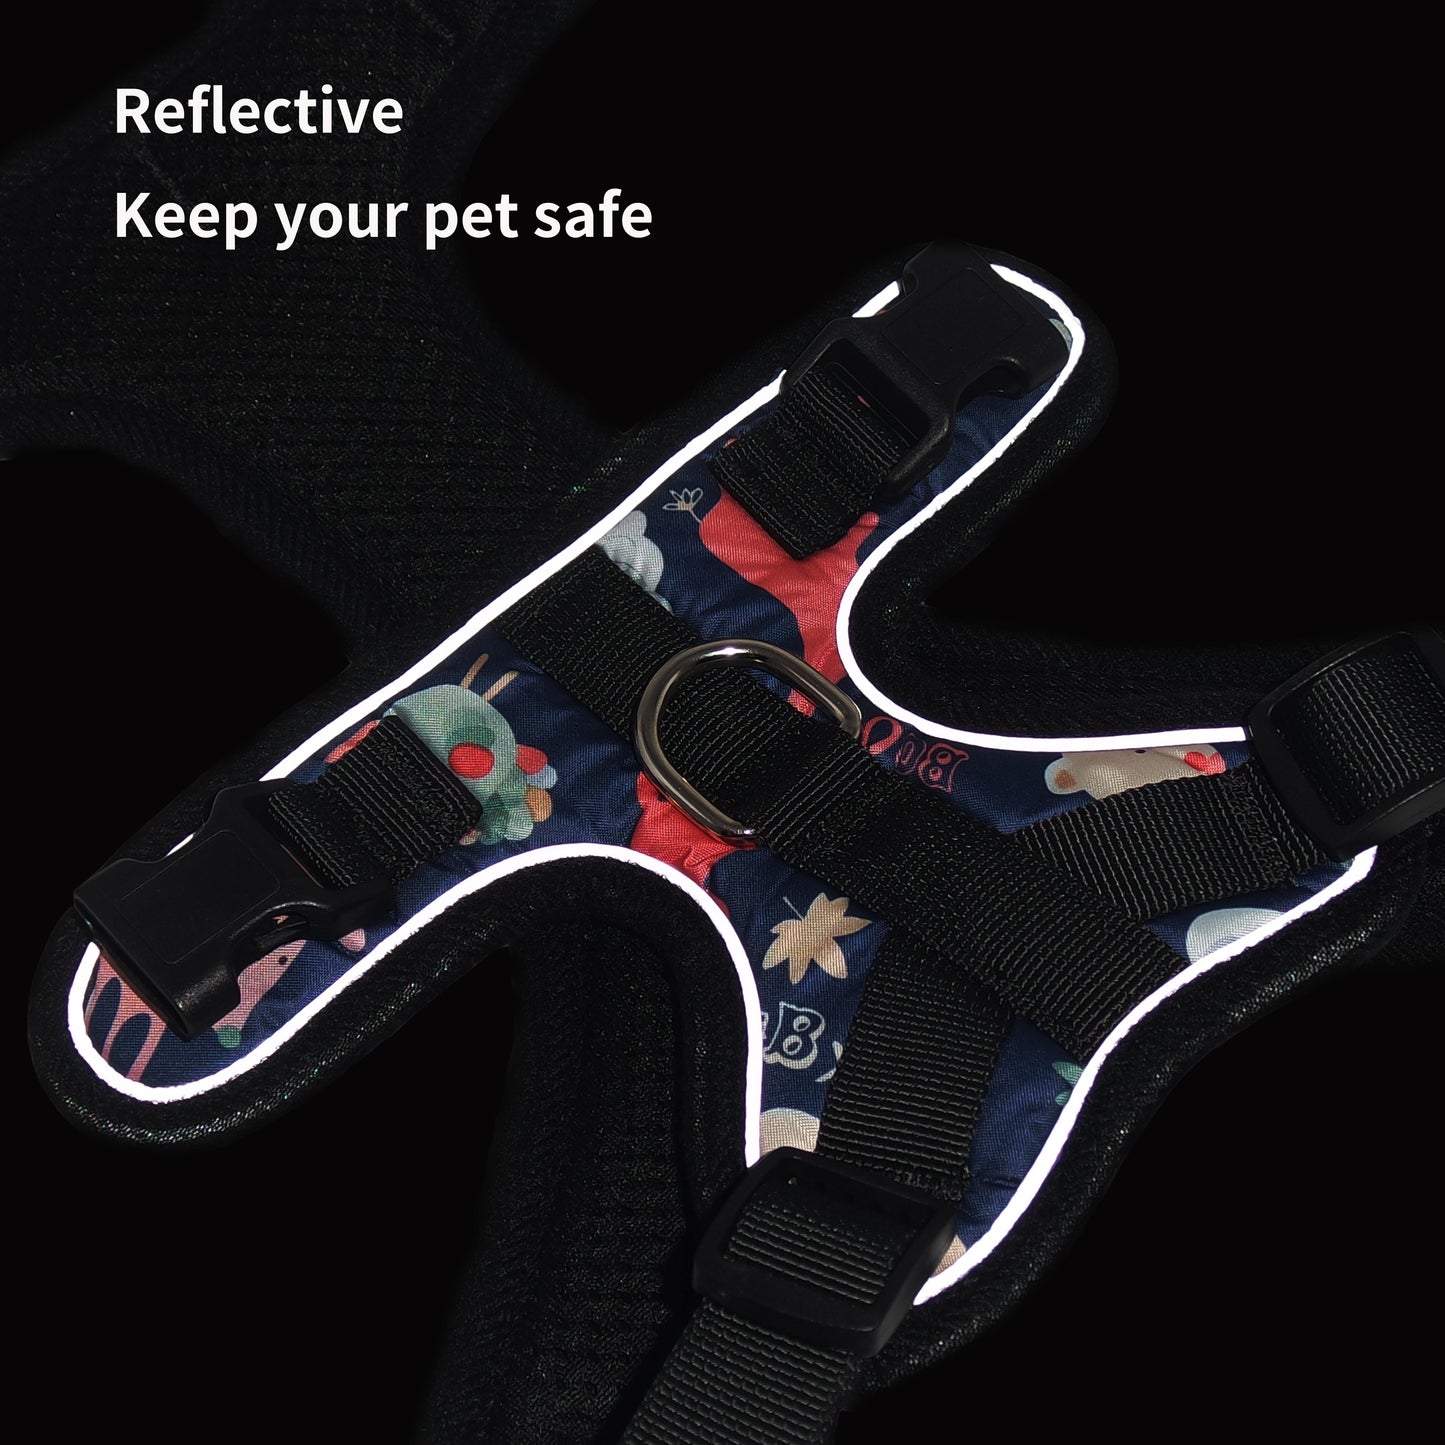 Reflective Safety K9 Dog Harness